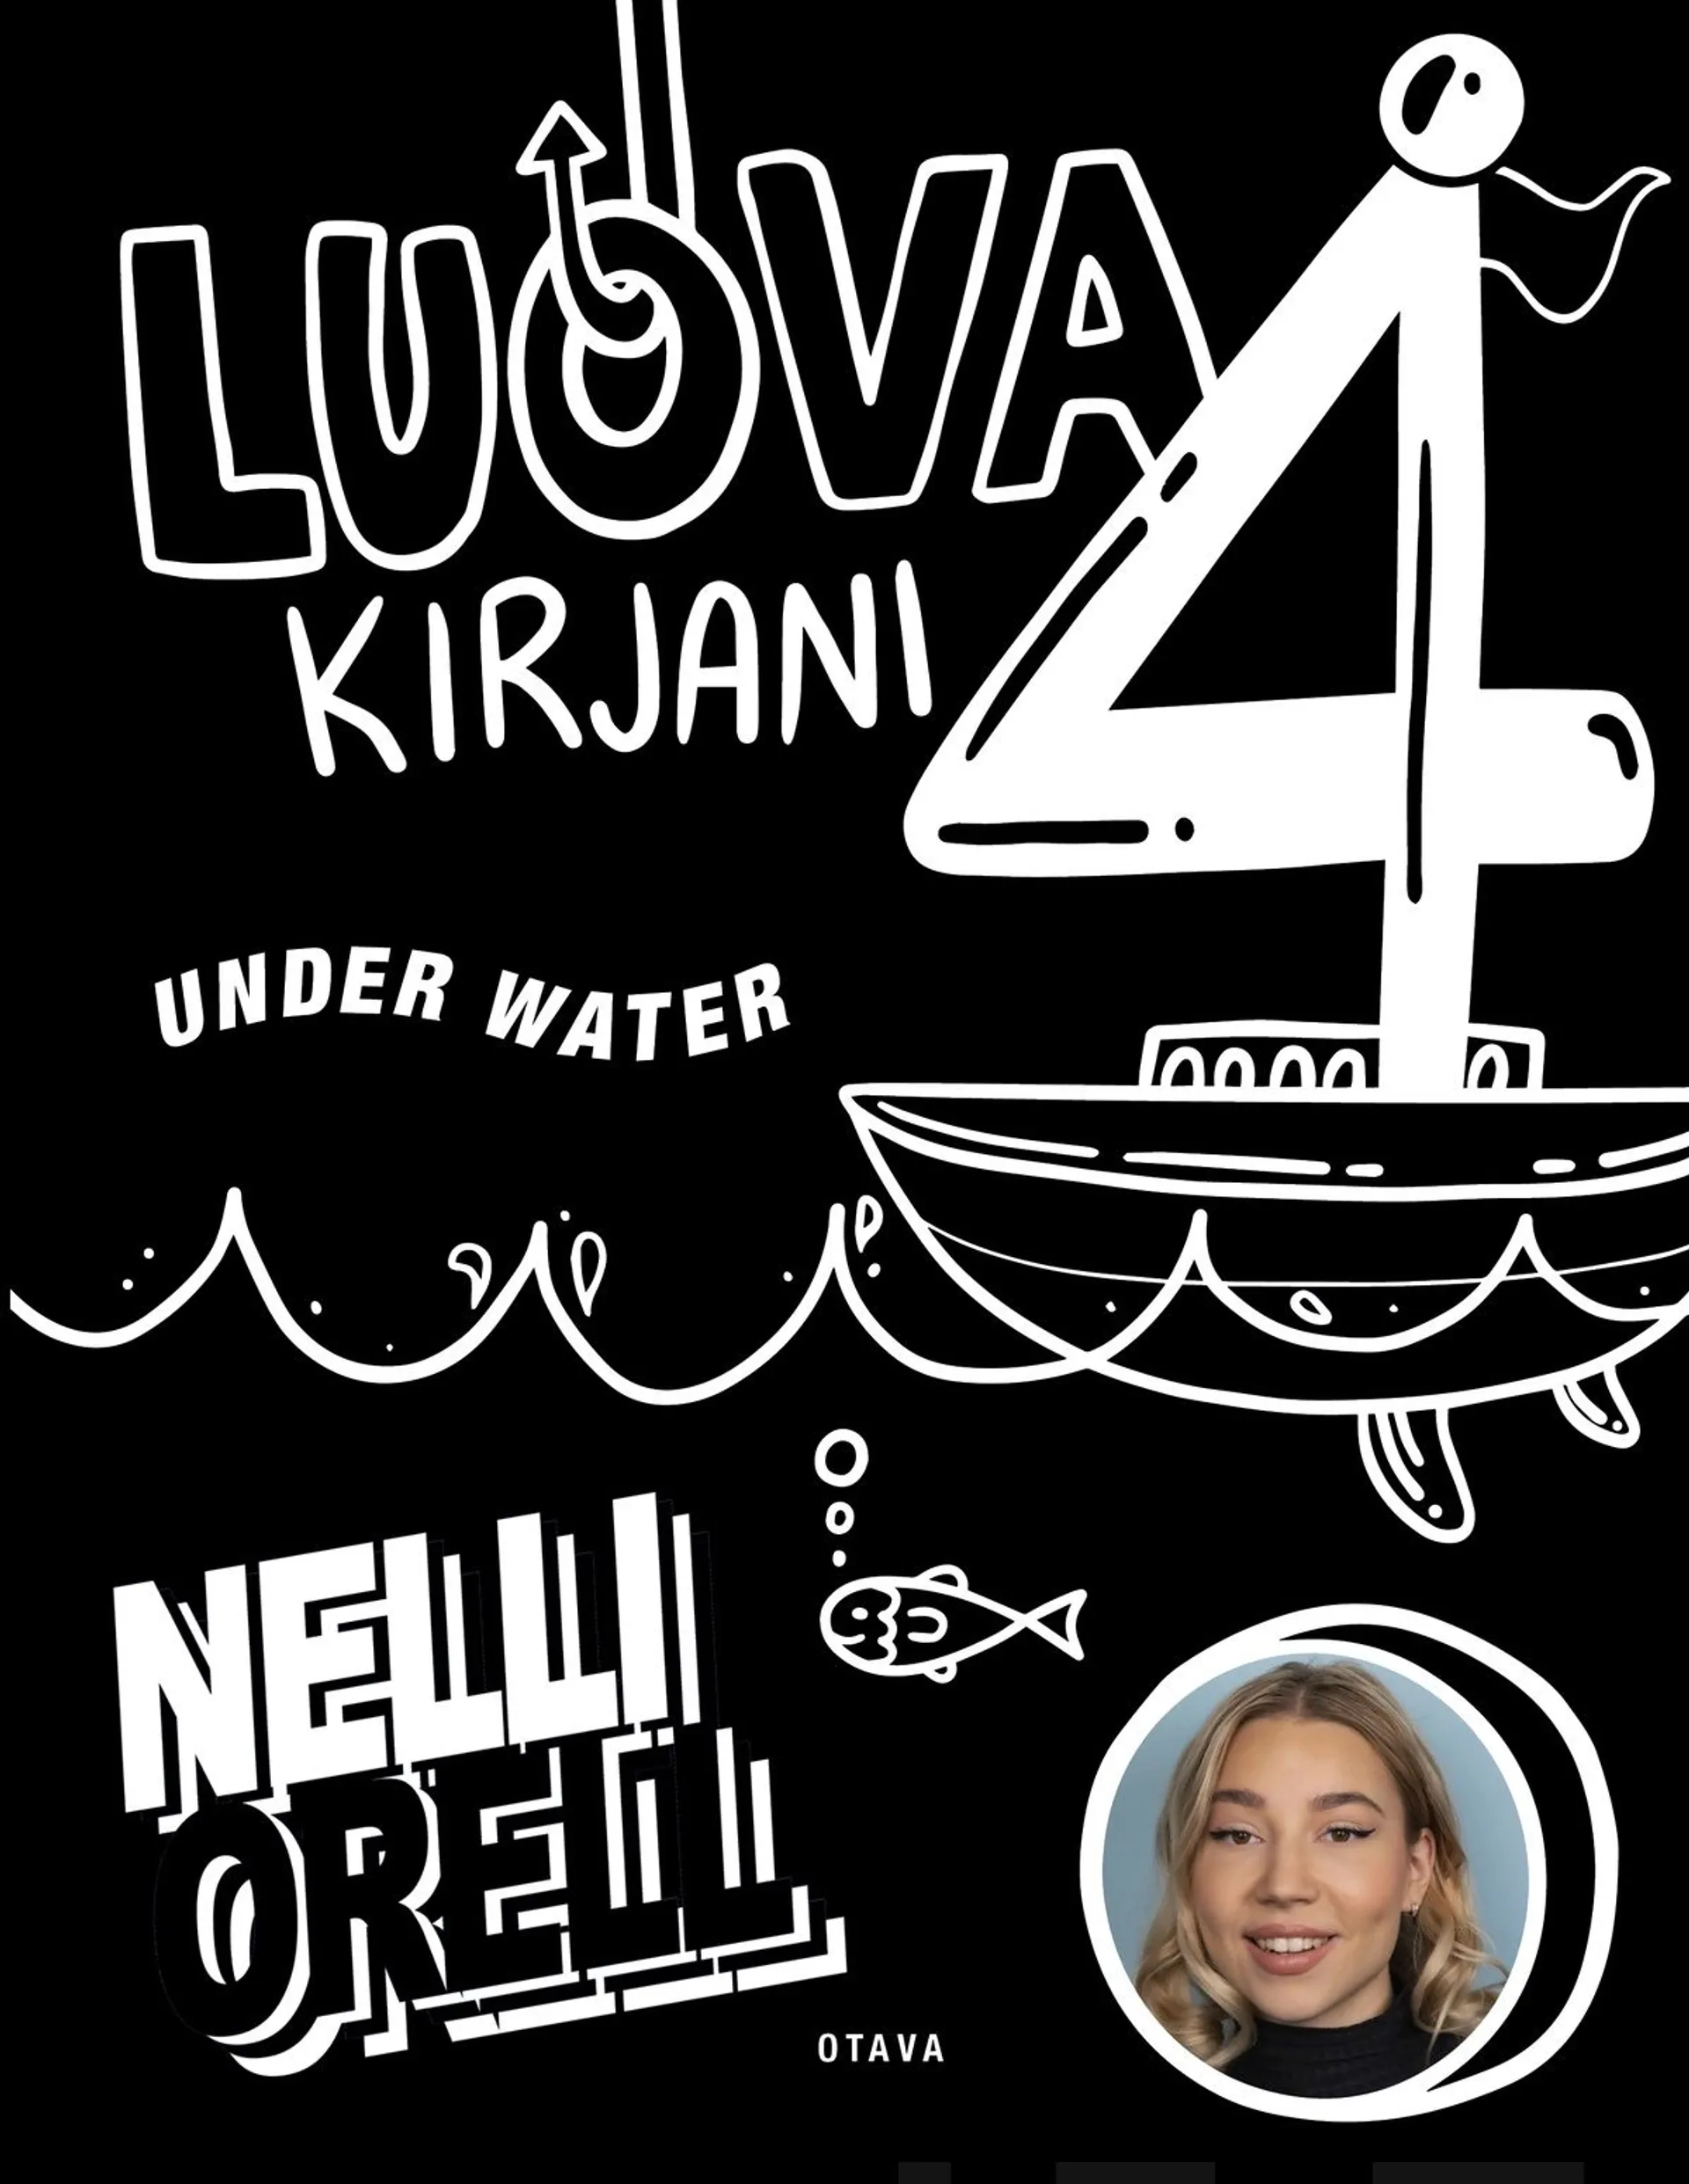 Orell, Luova kirjani 4 - Under water